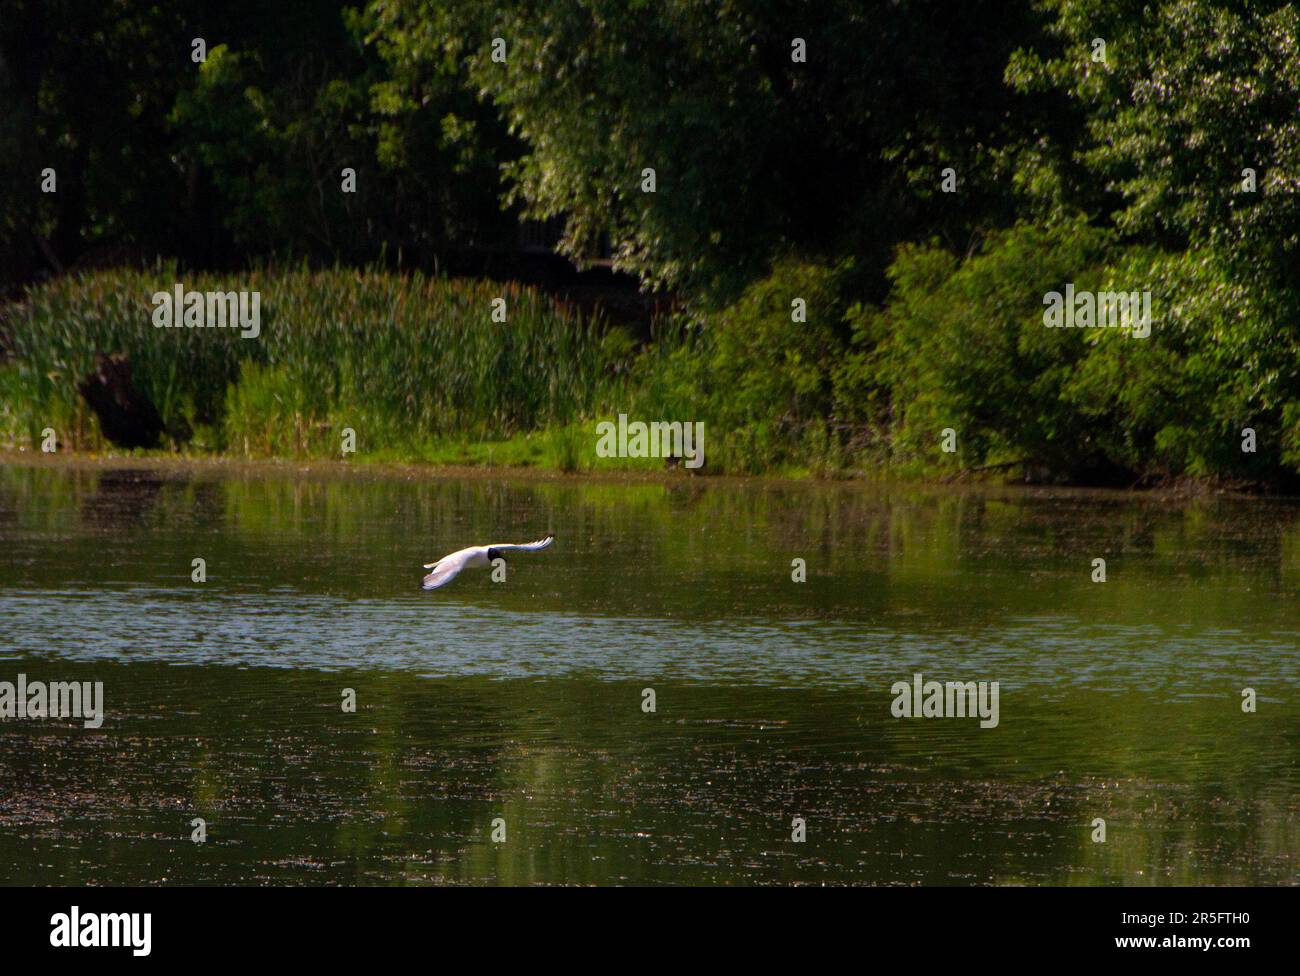 Uccelli nel loro habitat naturale sul fiume Studva, Serbia - immagini Foto Stock